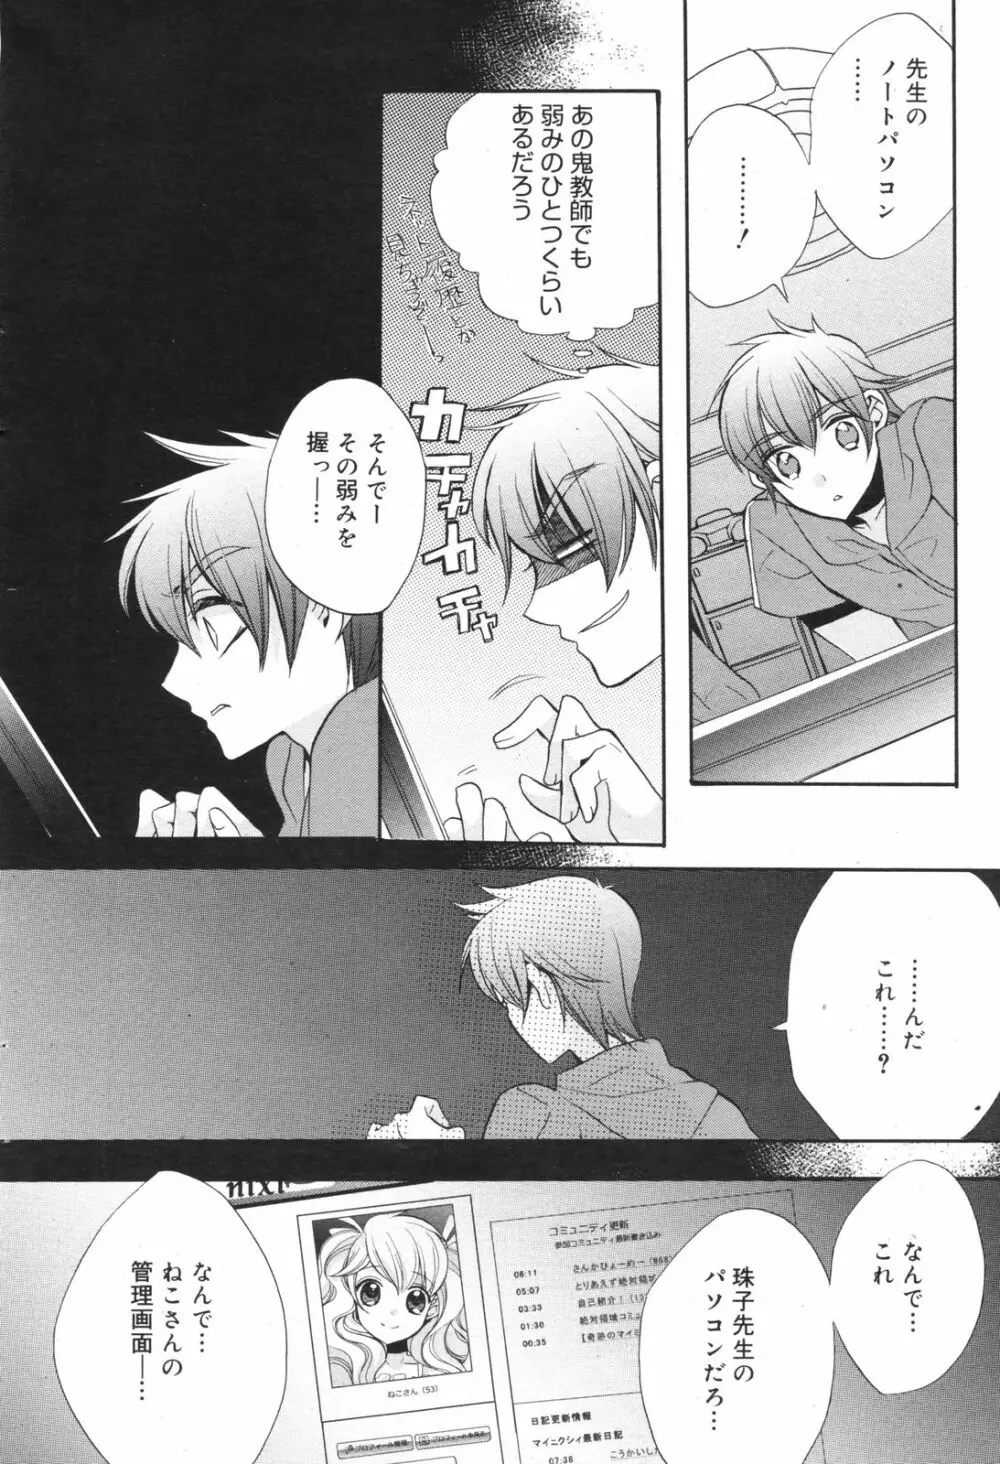 Manga Bangaichi 2008-11 66ページ